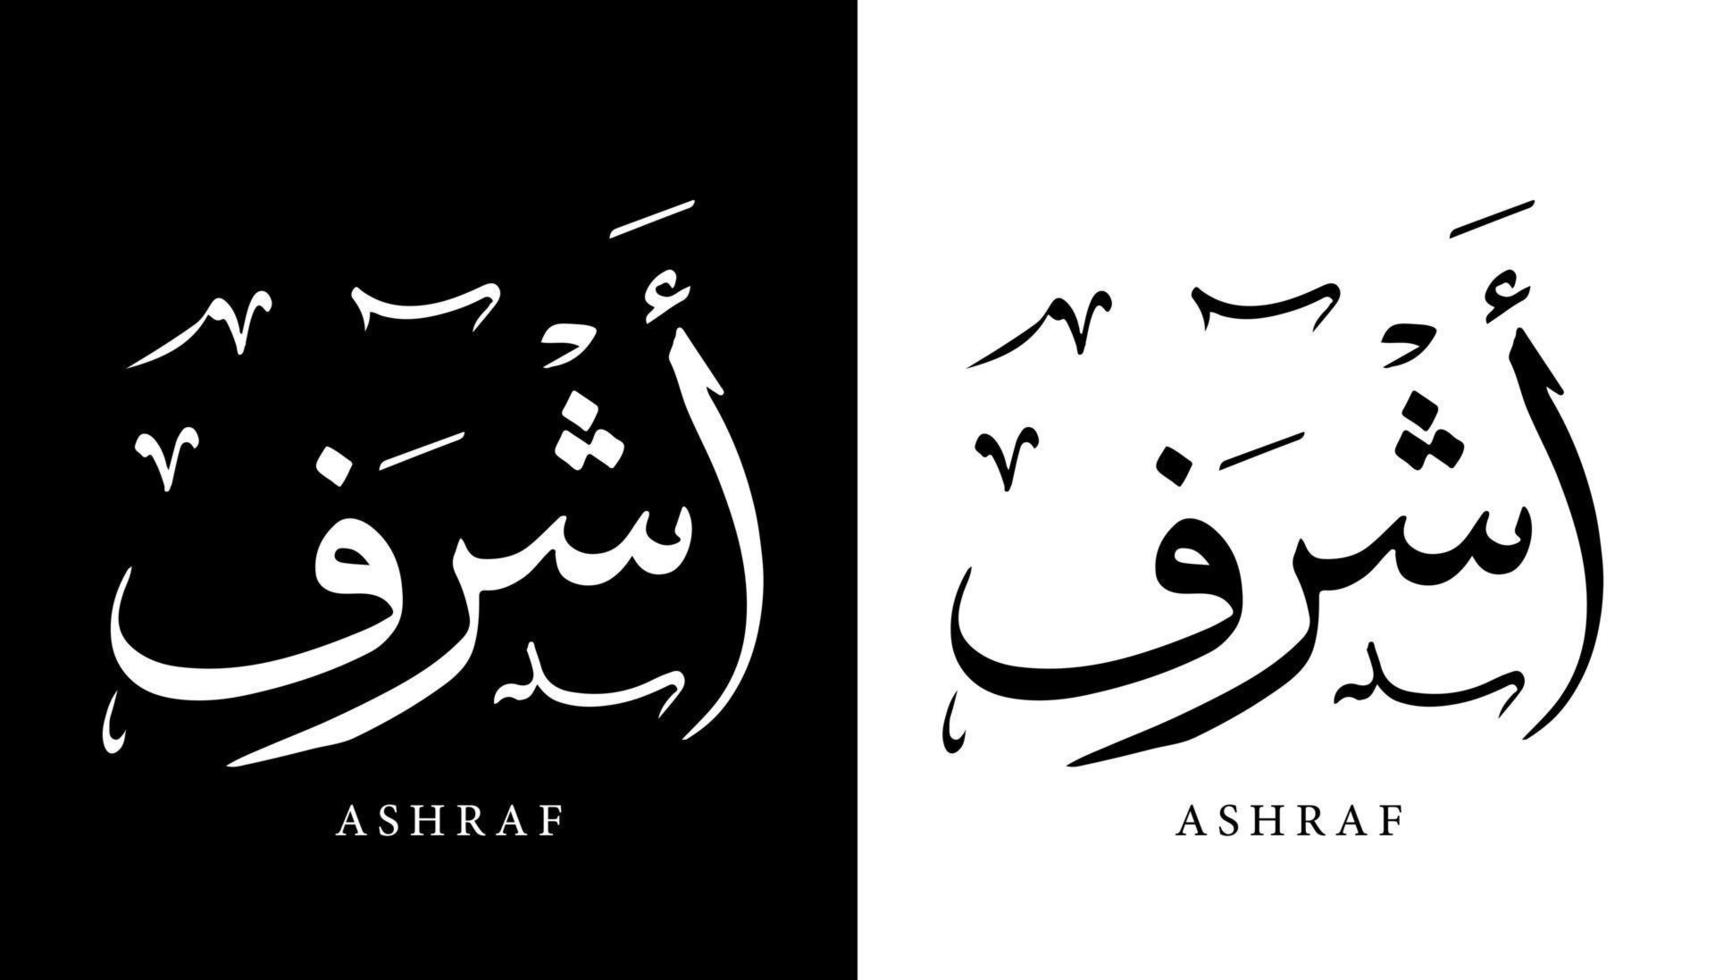 nome della calligrafia araba tradotto 'ashraf' lettere arabe alfabeto font lettering logo islamico illustrazione vettoriale